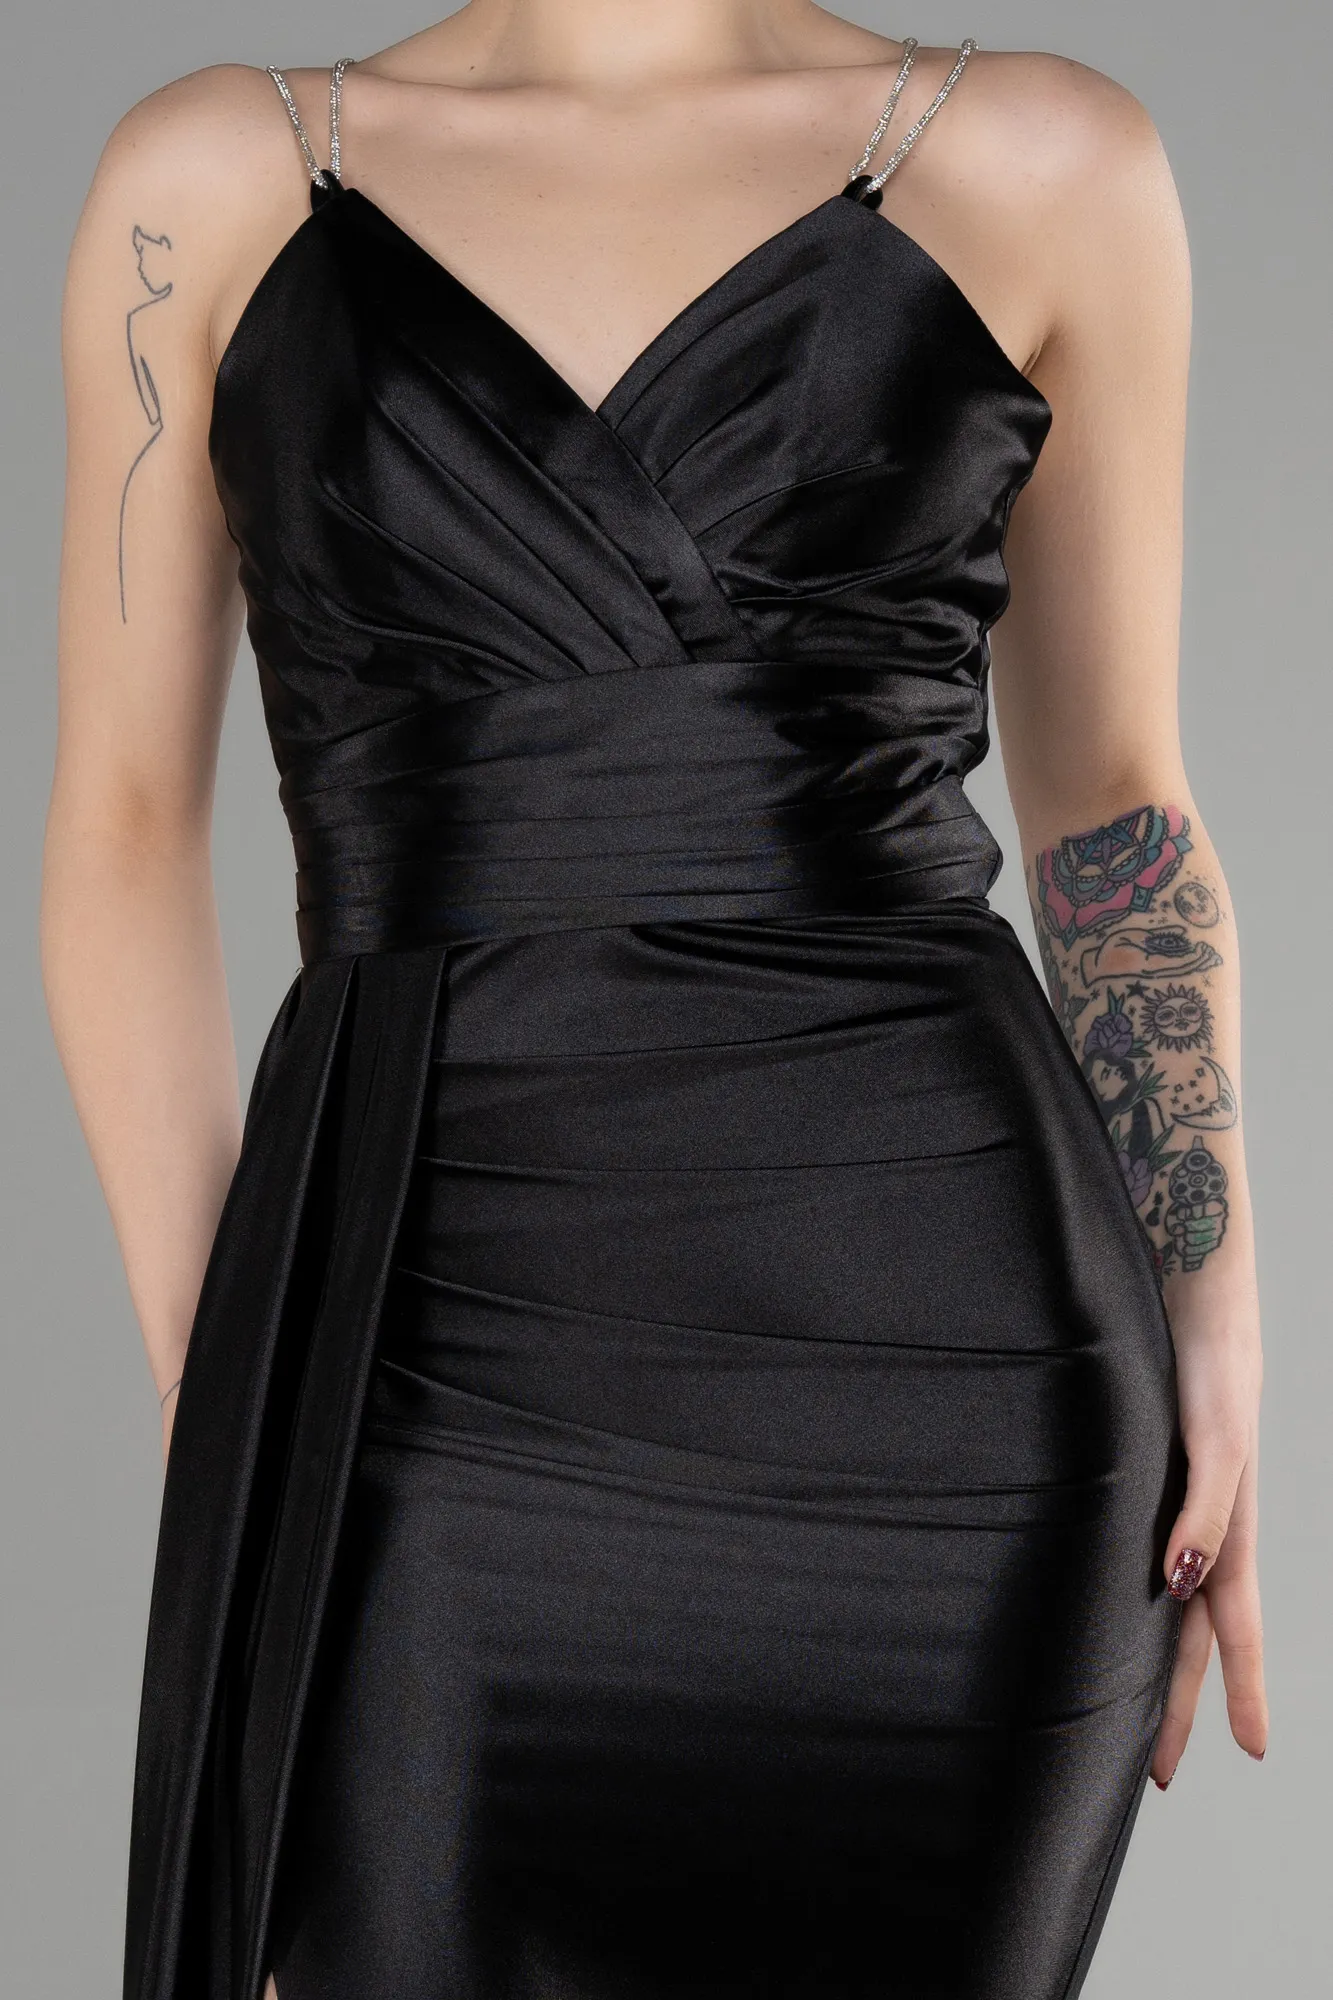 Black-Long Evening Dress ABU3564